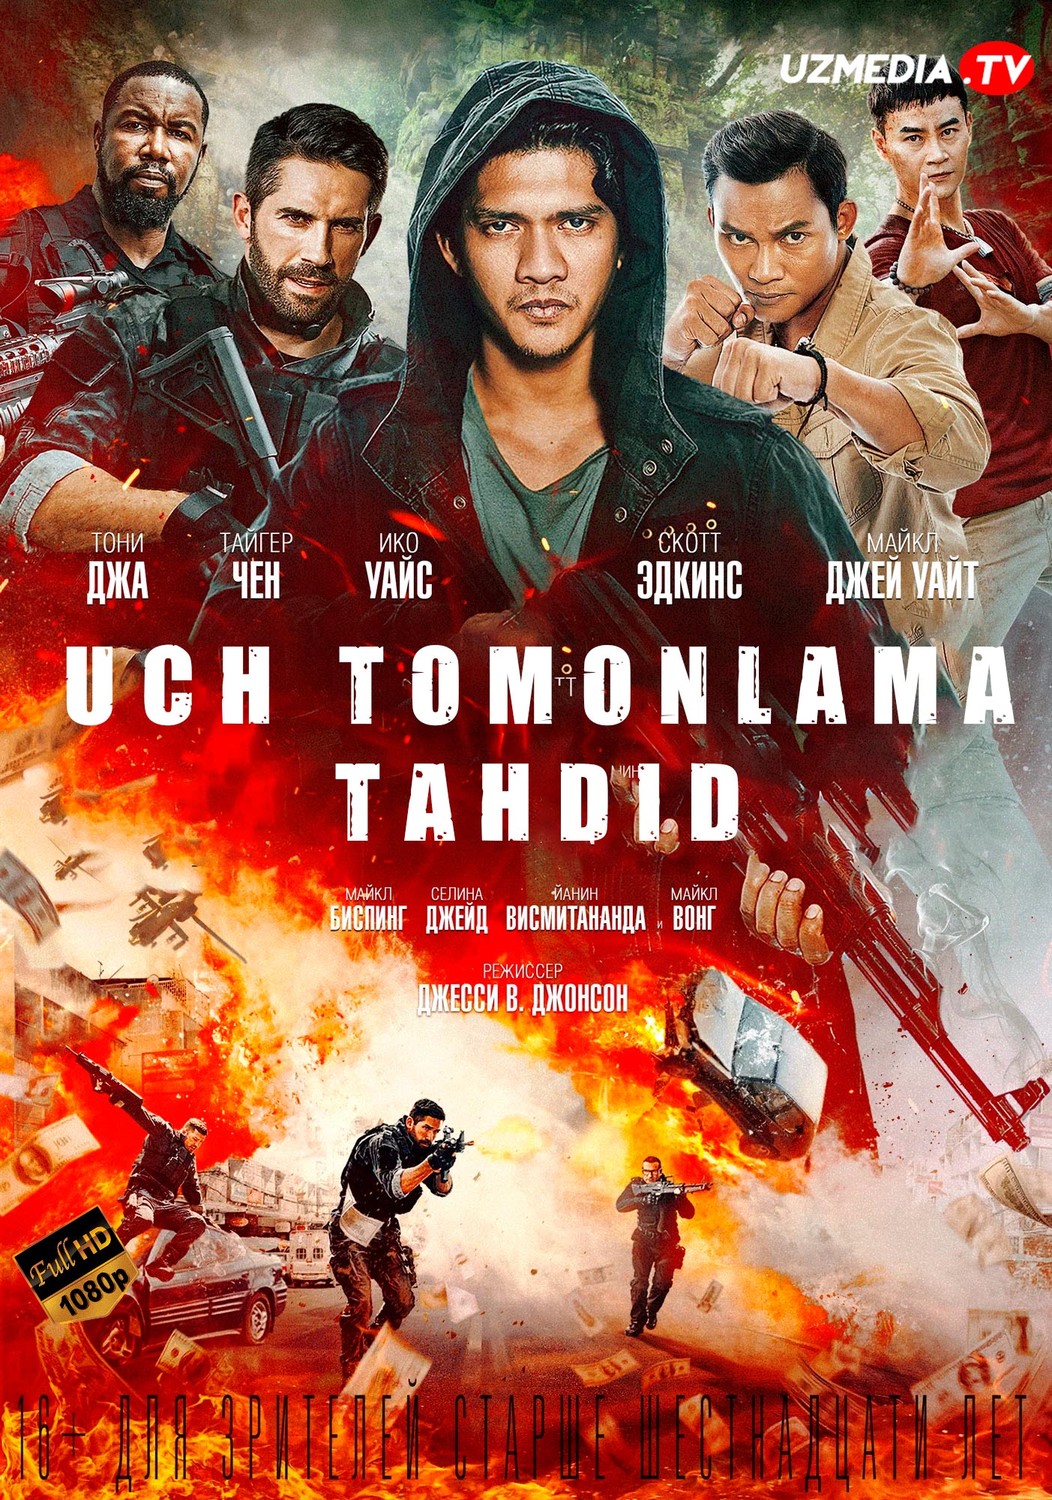 Uch 3 tomonlama taxdid Tailand filmi Uzbek tilida O'zbekcha tarjima kino 2019 Full HD skachat